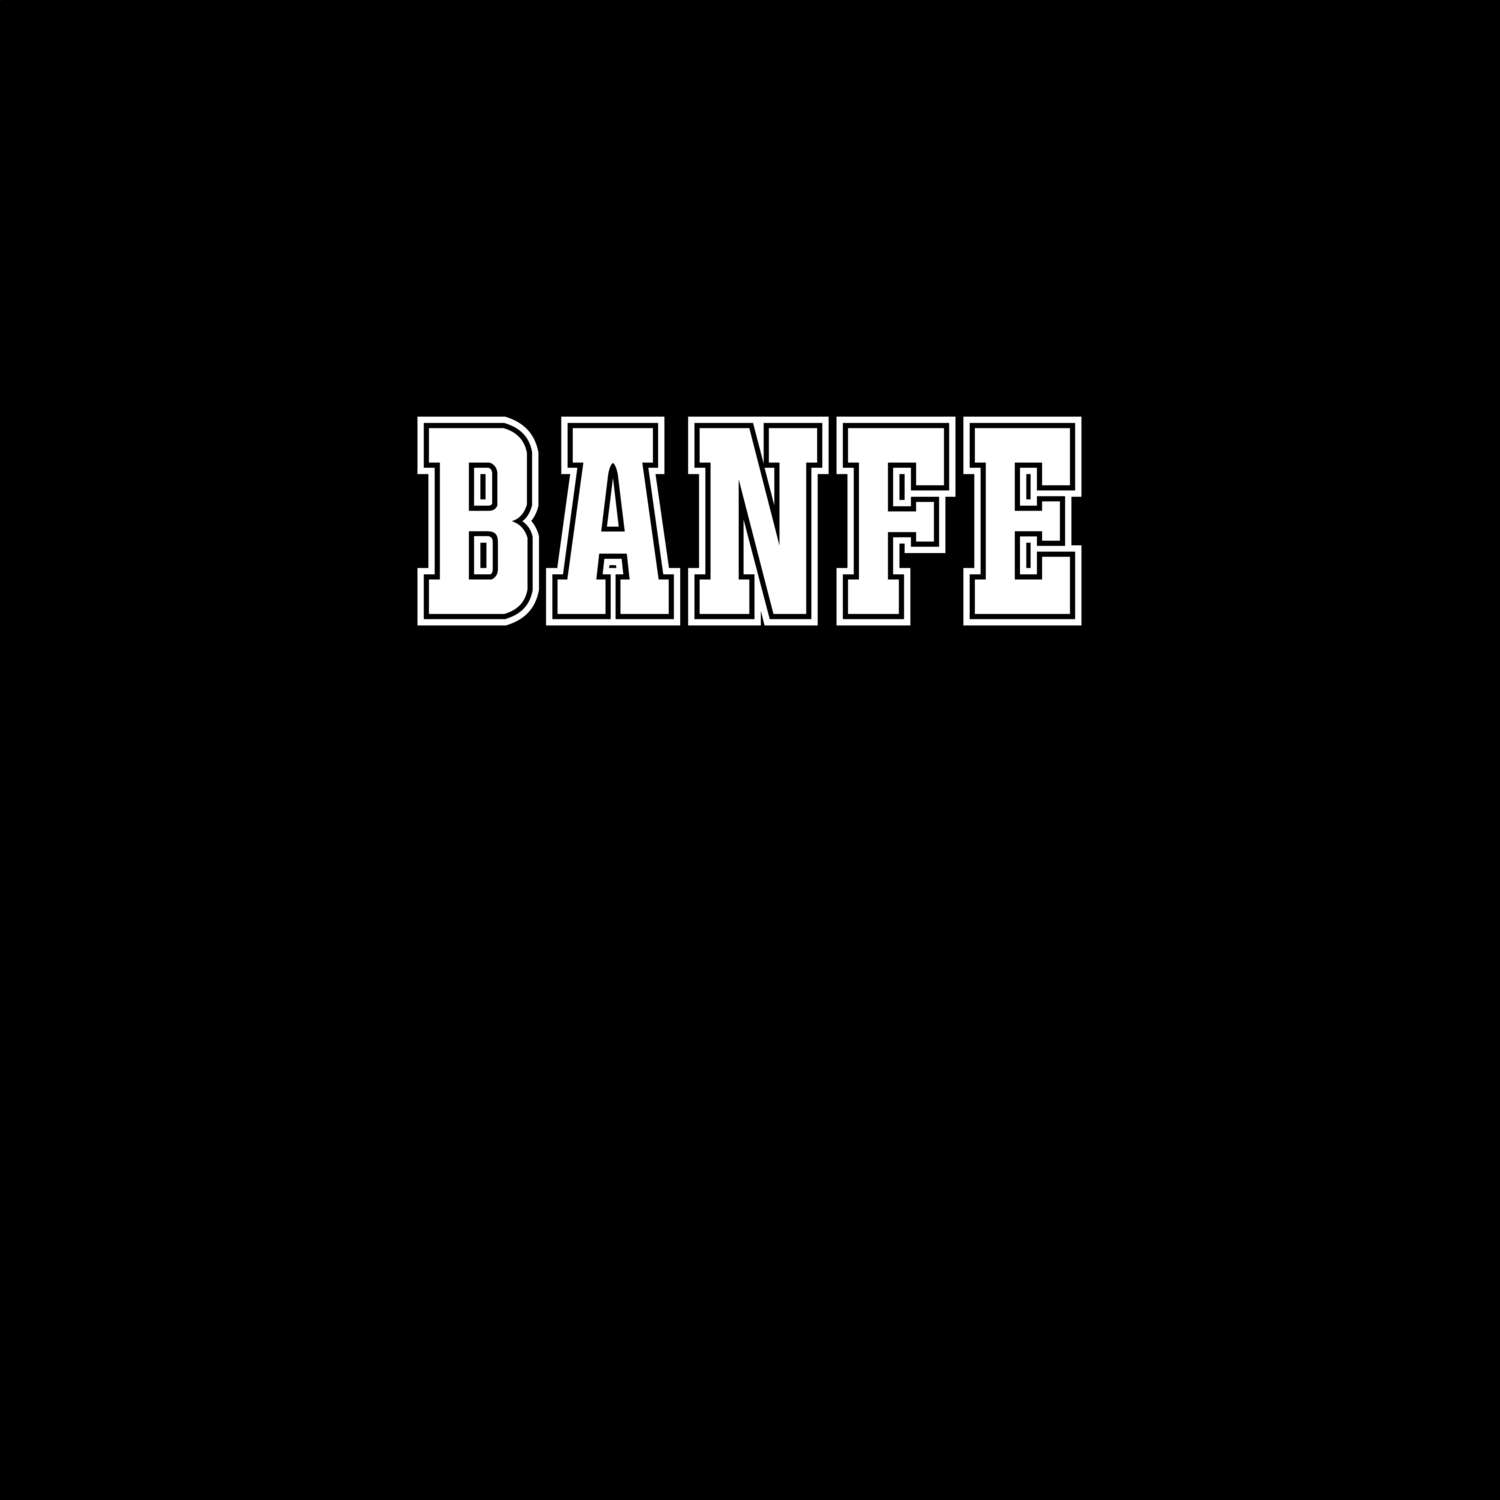 Banfe T-Shirt »Classic«